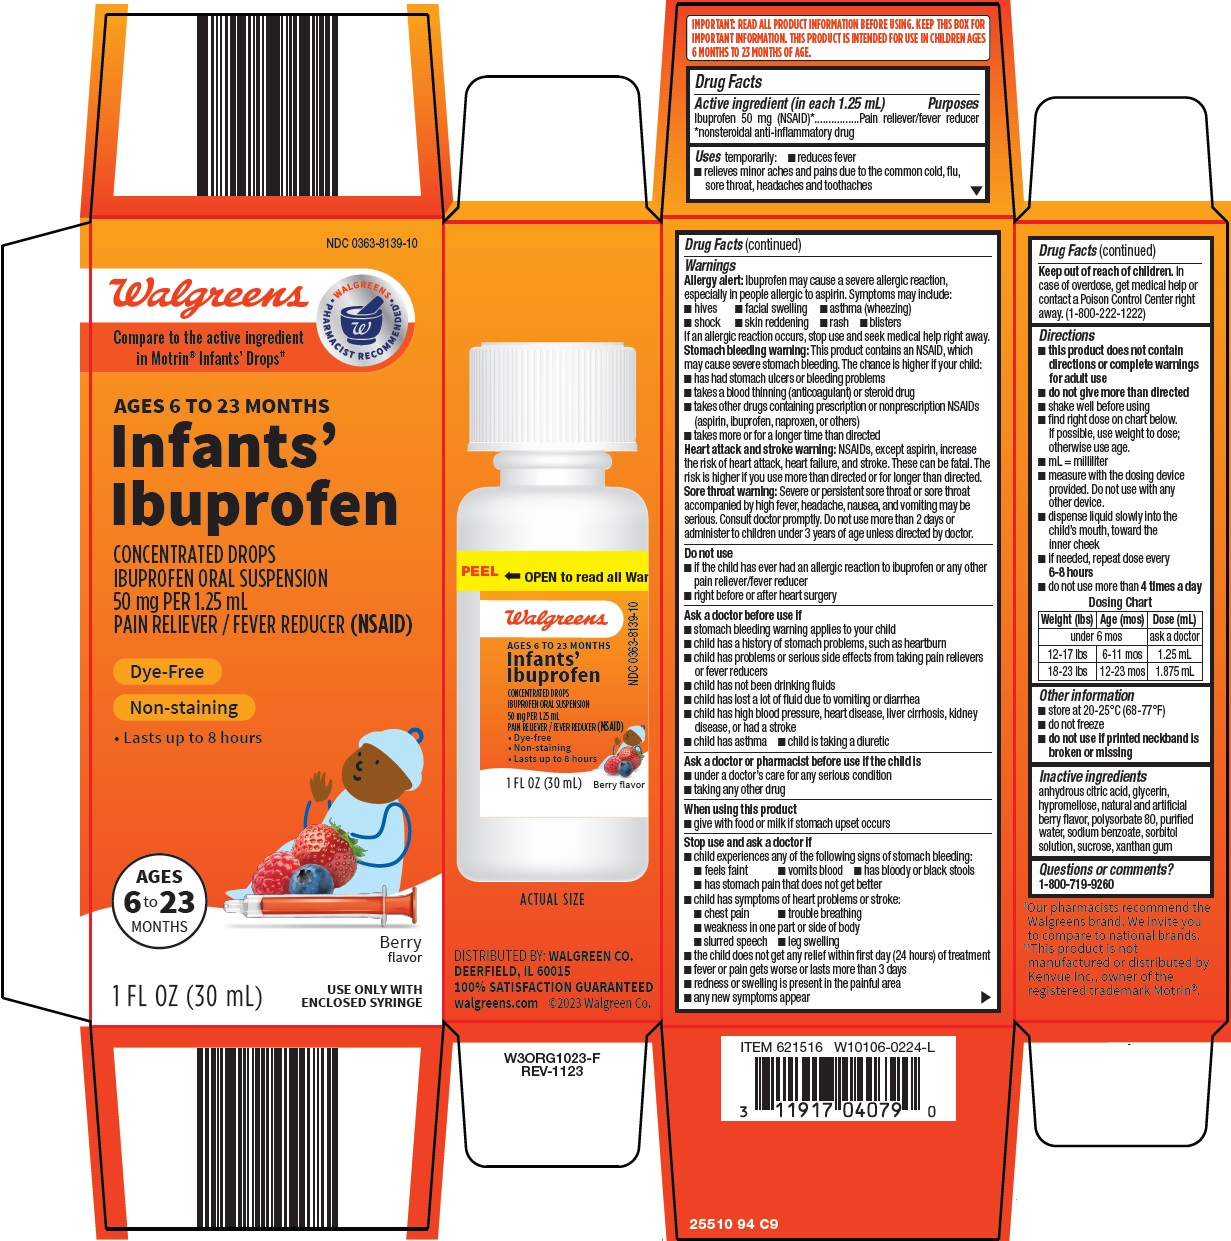 255-94-infants-ibuprofen